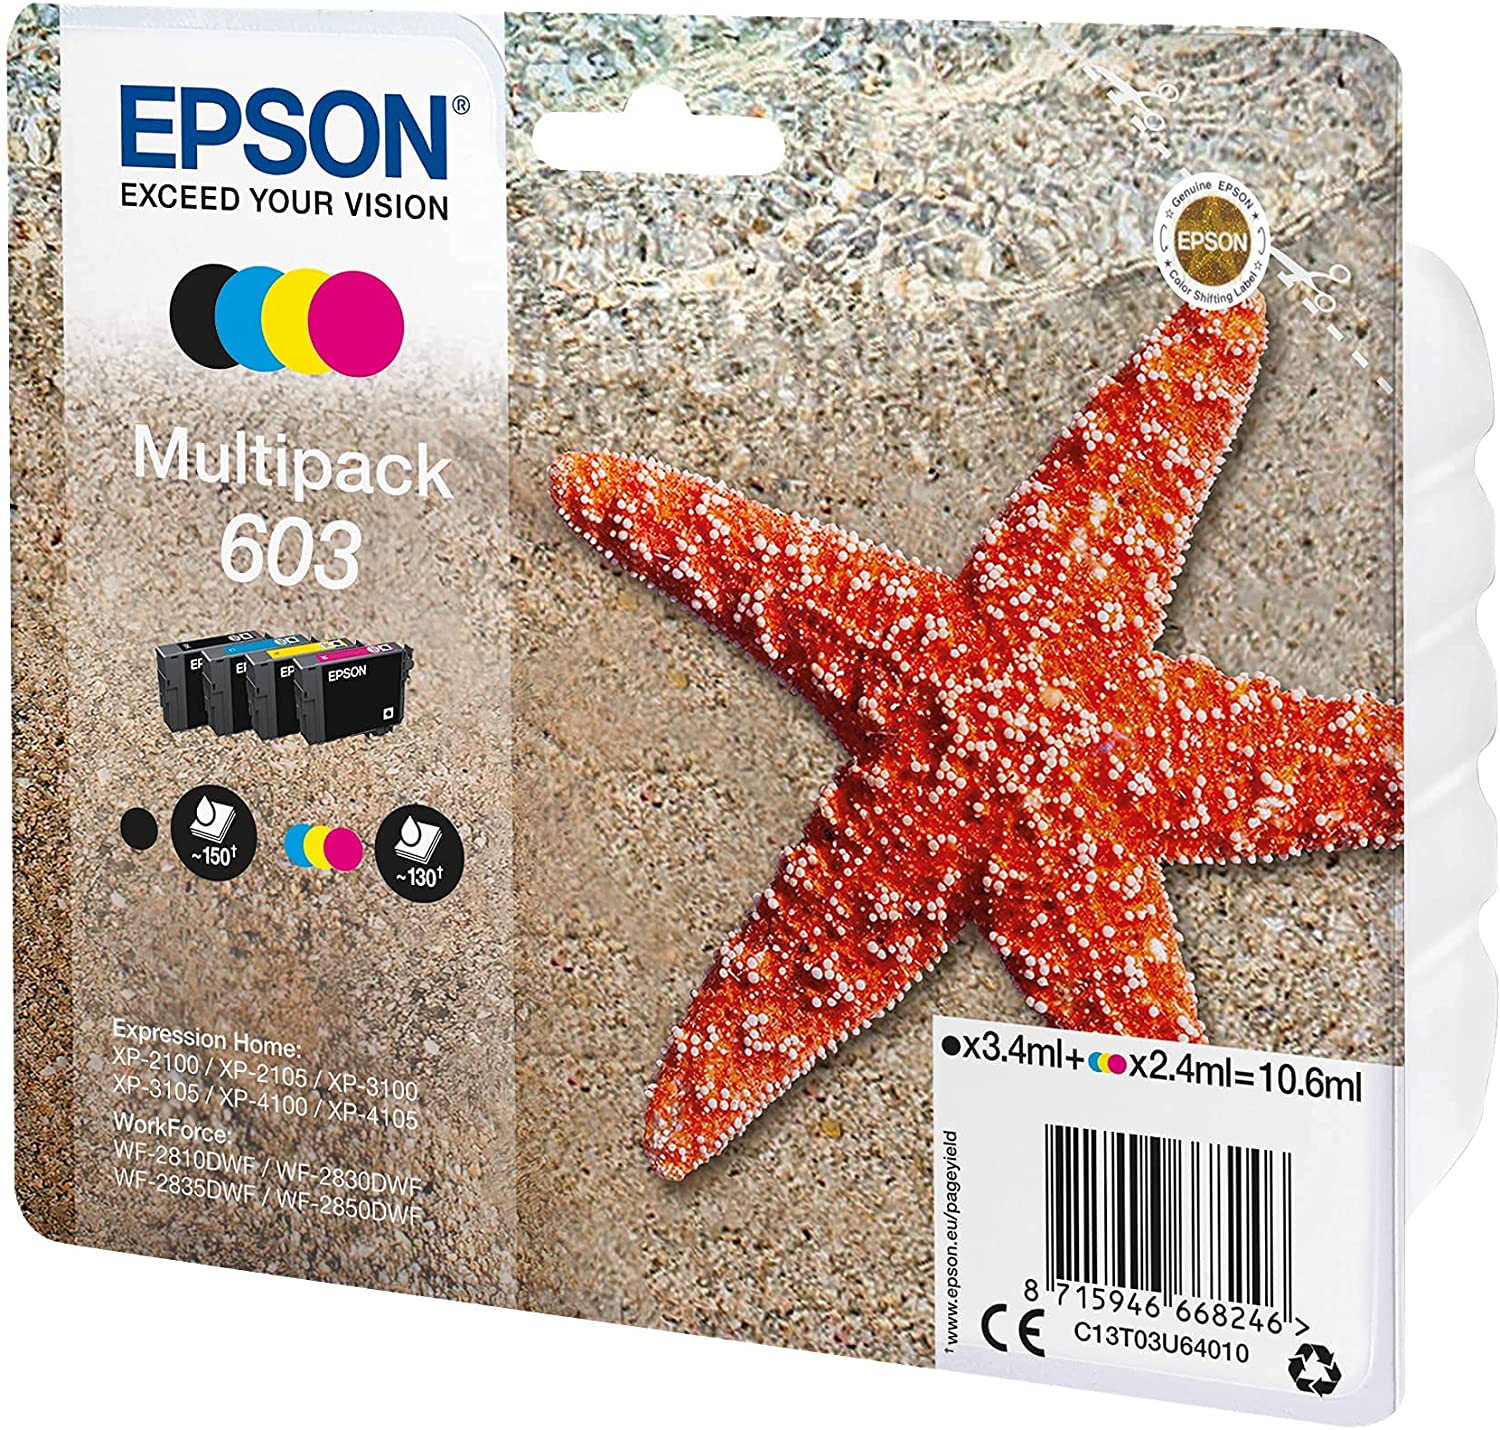 Epson Multipack 603   